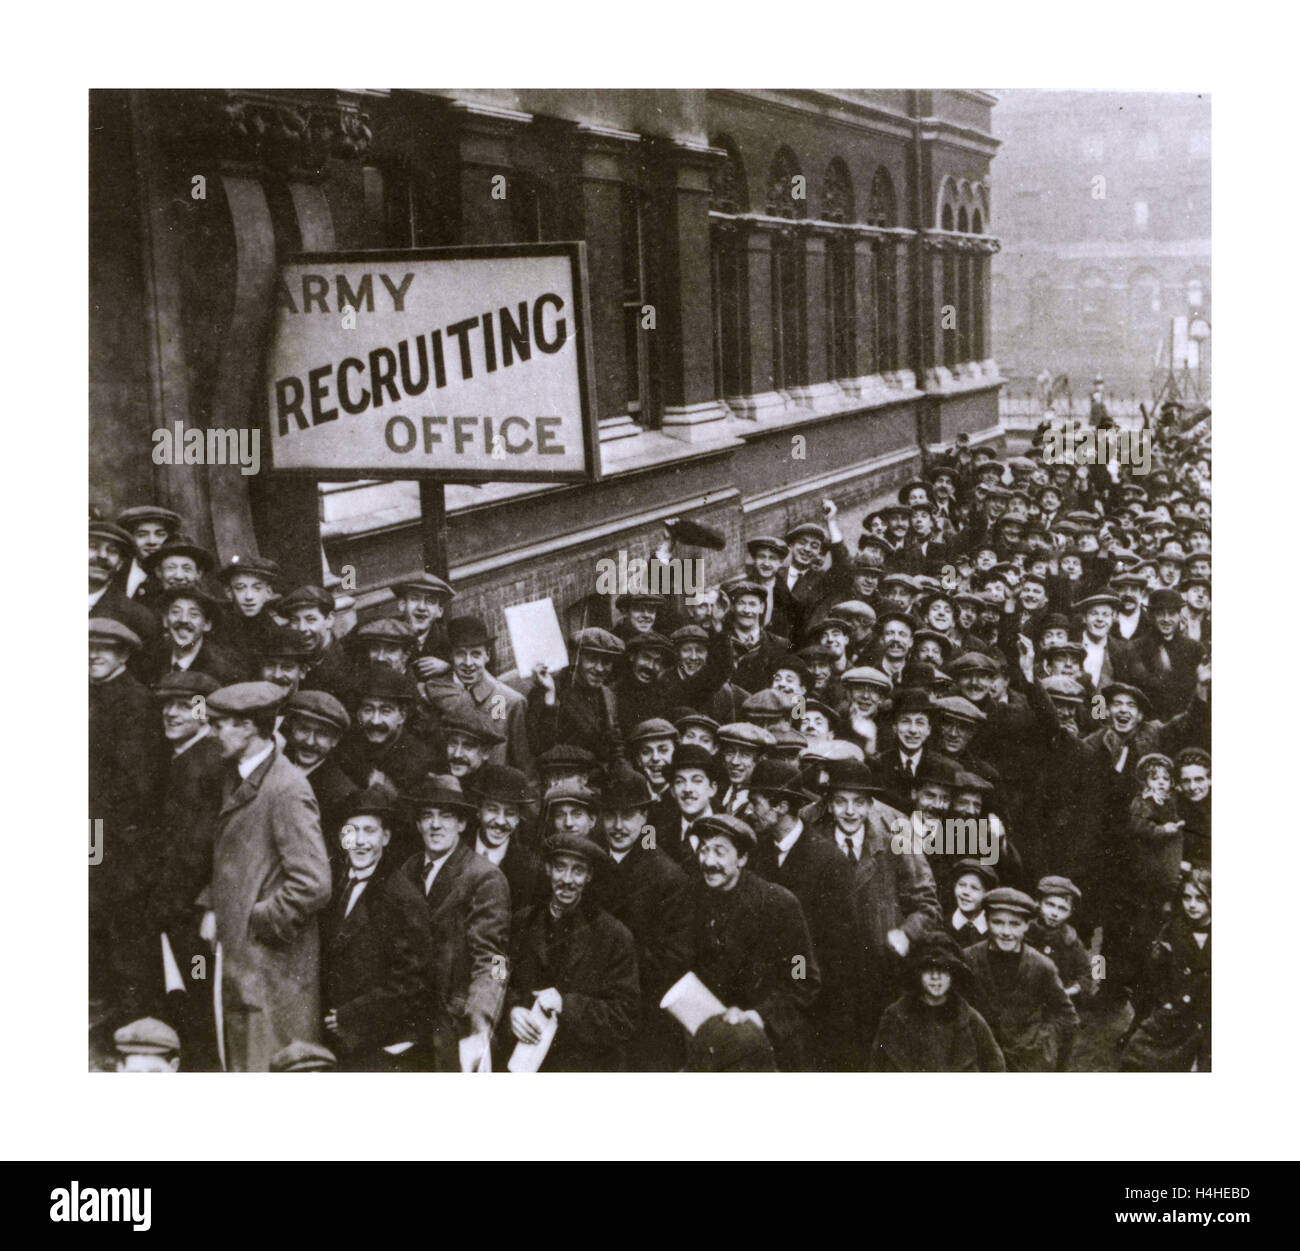 Rekrutierungsbüro der Armee aus dem 1. Weltkrieg mit Haufen fröhlicher junger Männer, die bereit sind, sich für den Krieg anzumelden. Lord Derby Rekrutierungskampagne.Walworth Town Hall Southwark London 1915 erster Weltkrieg Stockfoto